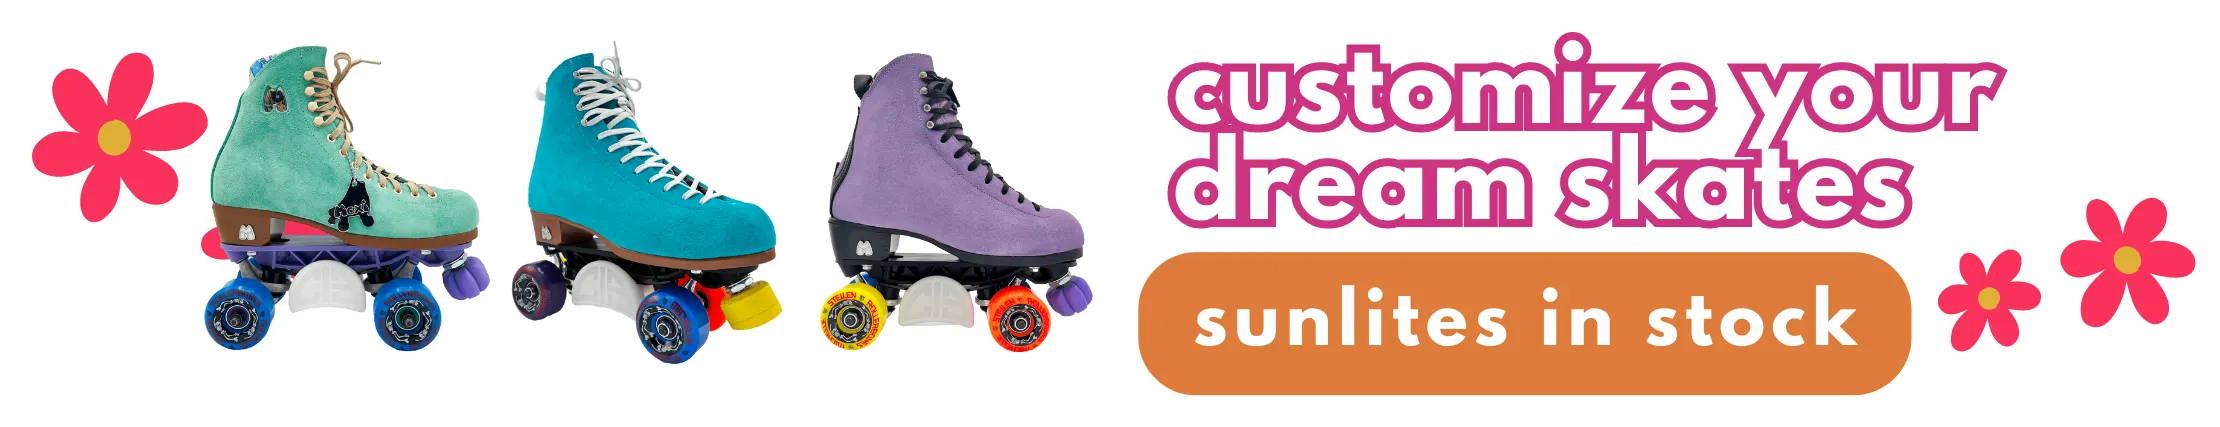 customize your dream skates. links to custom